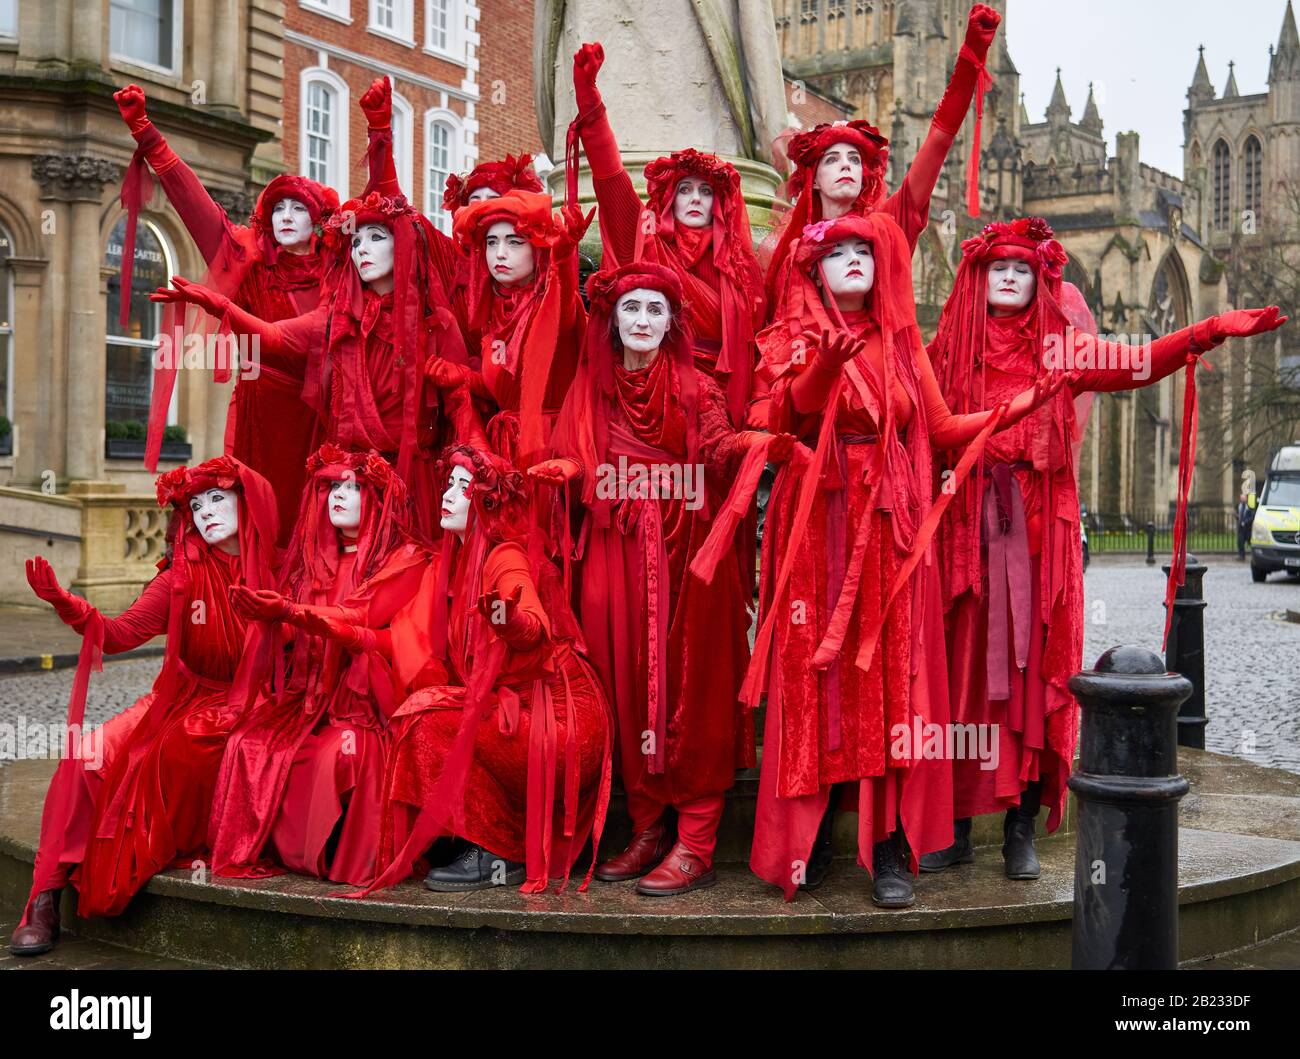 La Brigade rouge de la Rébellion de l'extinction, qui montre leurs poses frappantes, proteste pacifiquement pour soutenir les actions sur le changement climatique - Bristol UK Banque D'Images